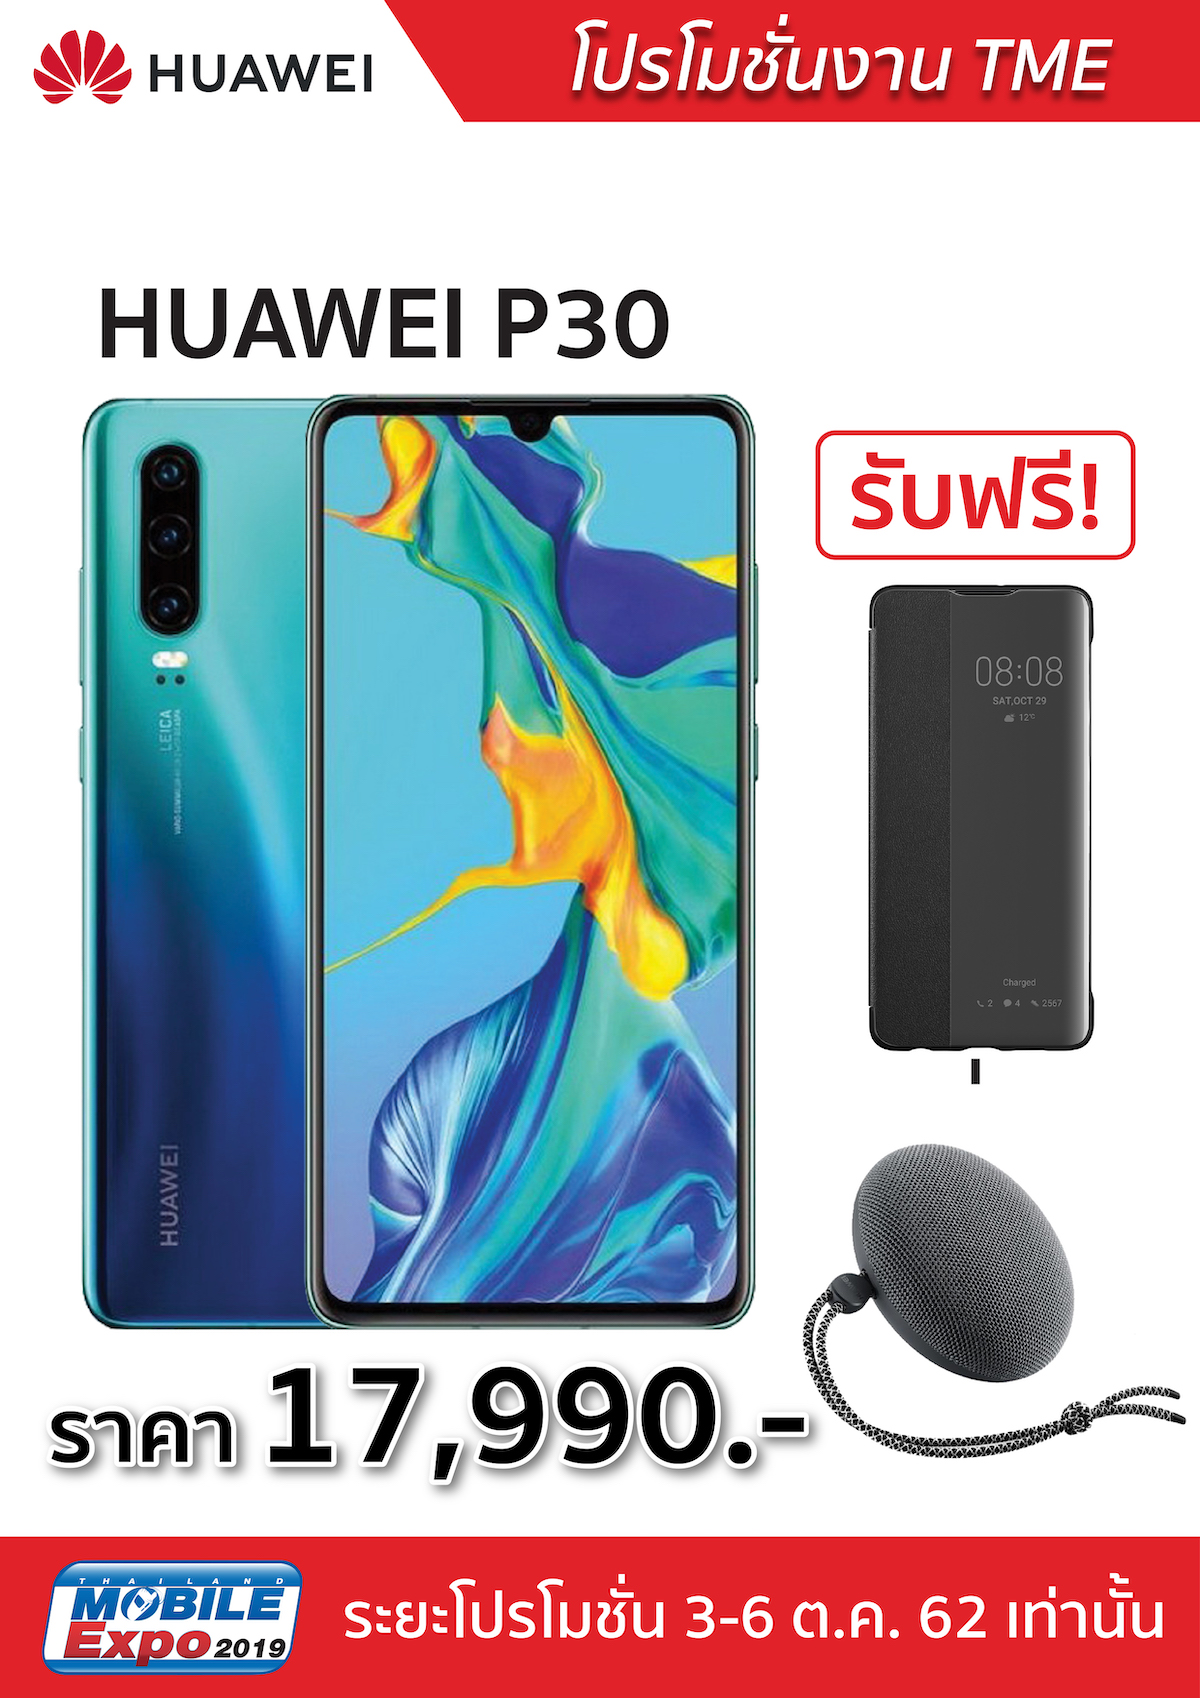 โปรโมชั่น Huawei ในงาน Mobile Expo 2019 วันที่ 3-6 ต.ค. ที่ ไบเทค บางนา